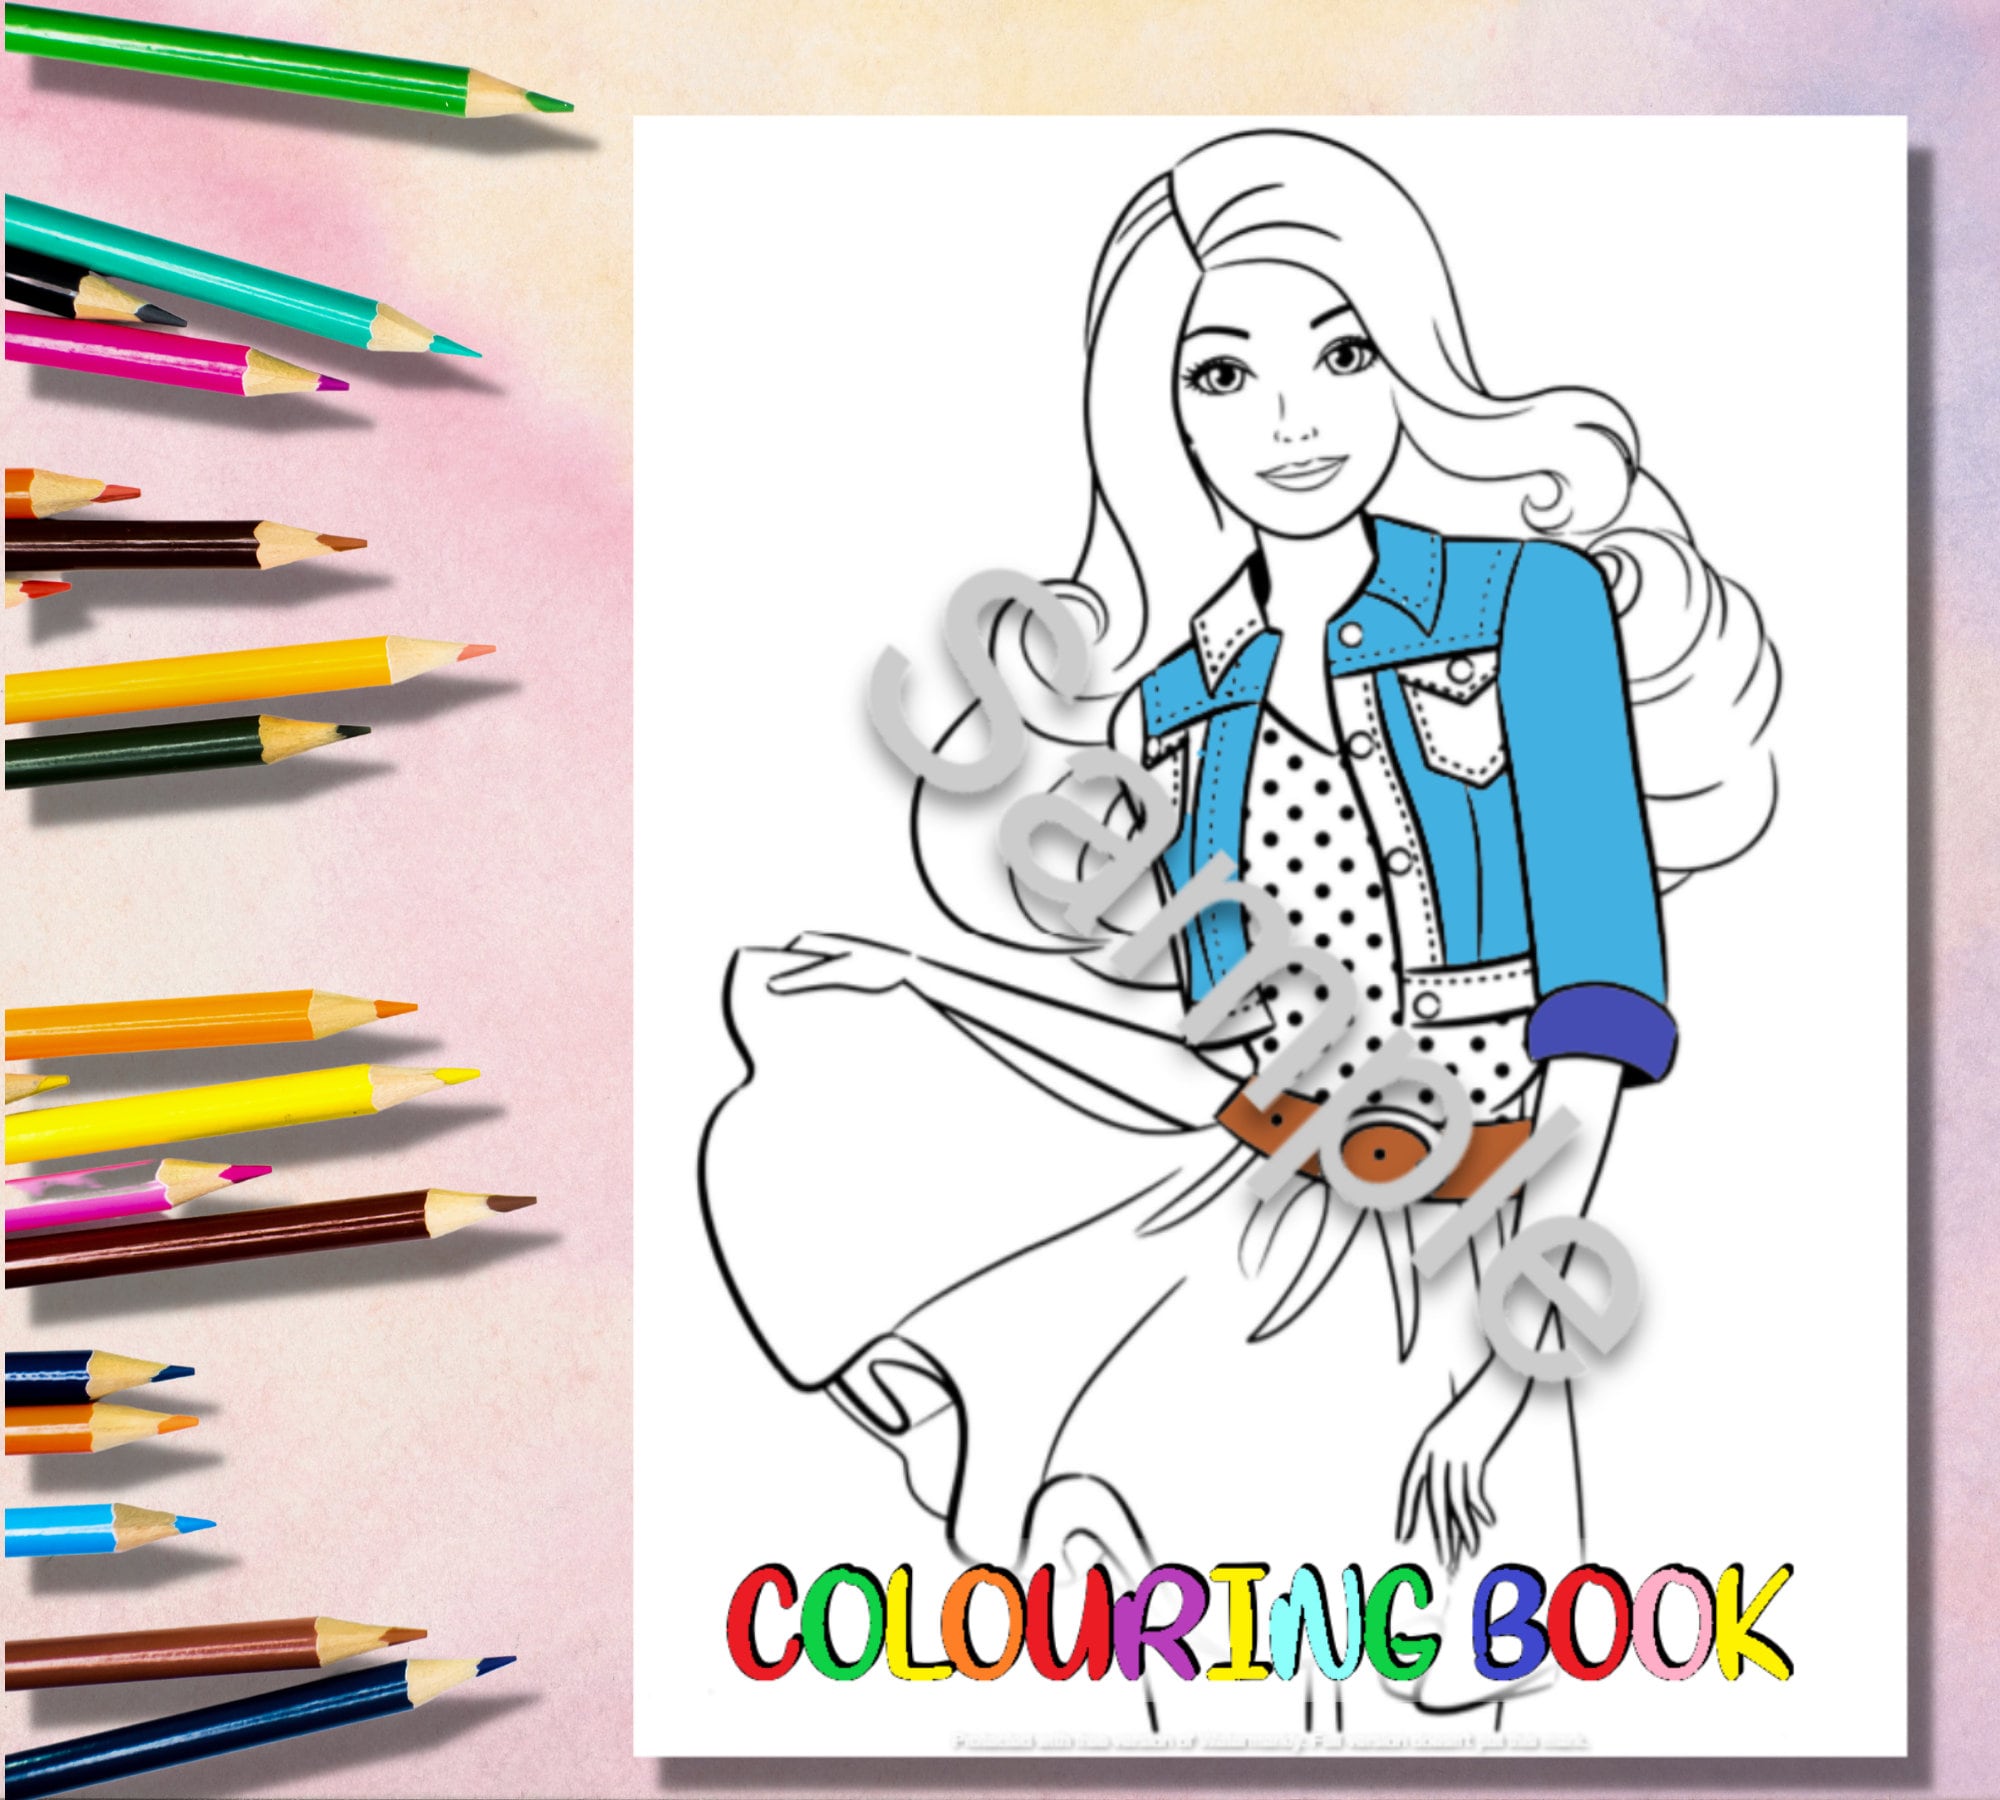 50 Desenhos da Barbie para Colorir Grátis em PDF: Baixe Agora!